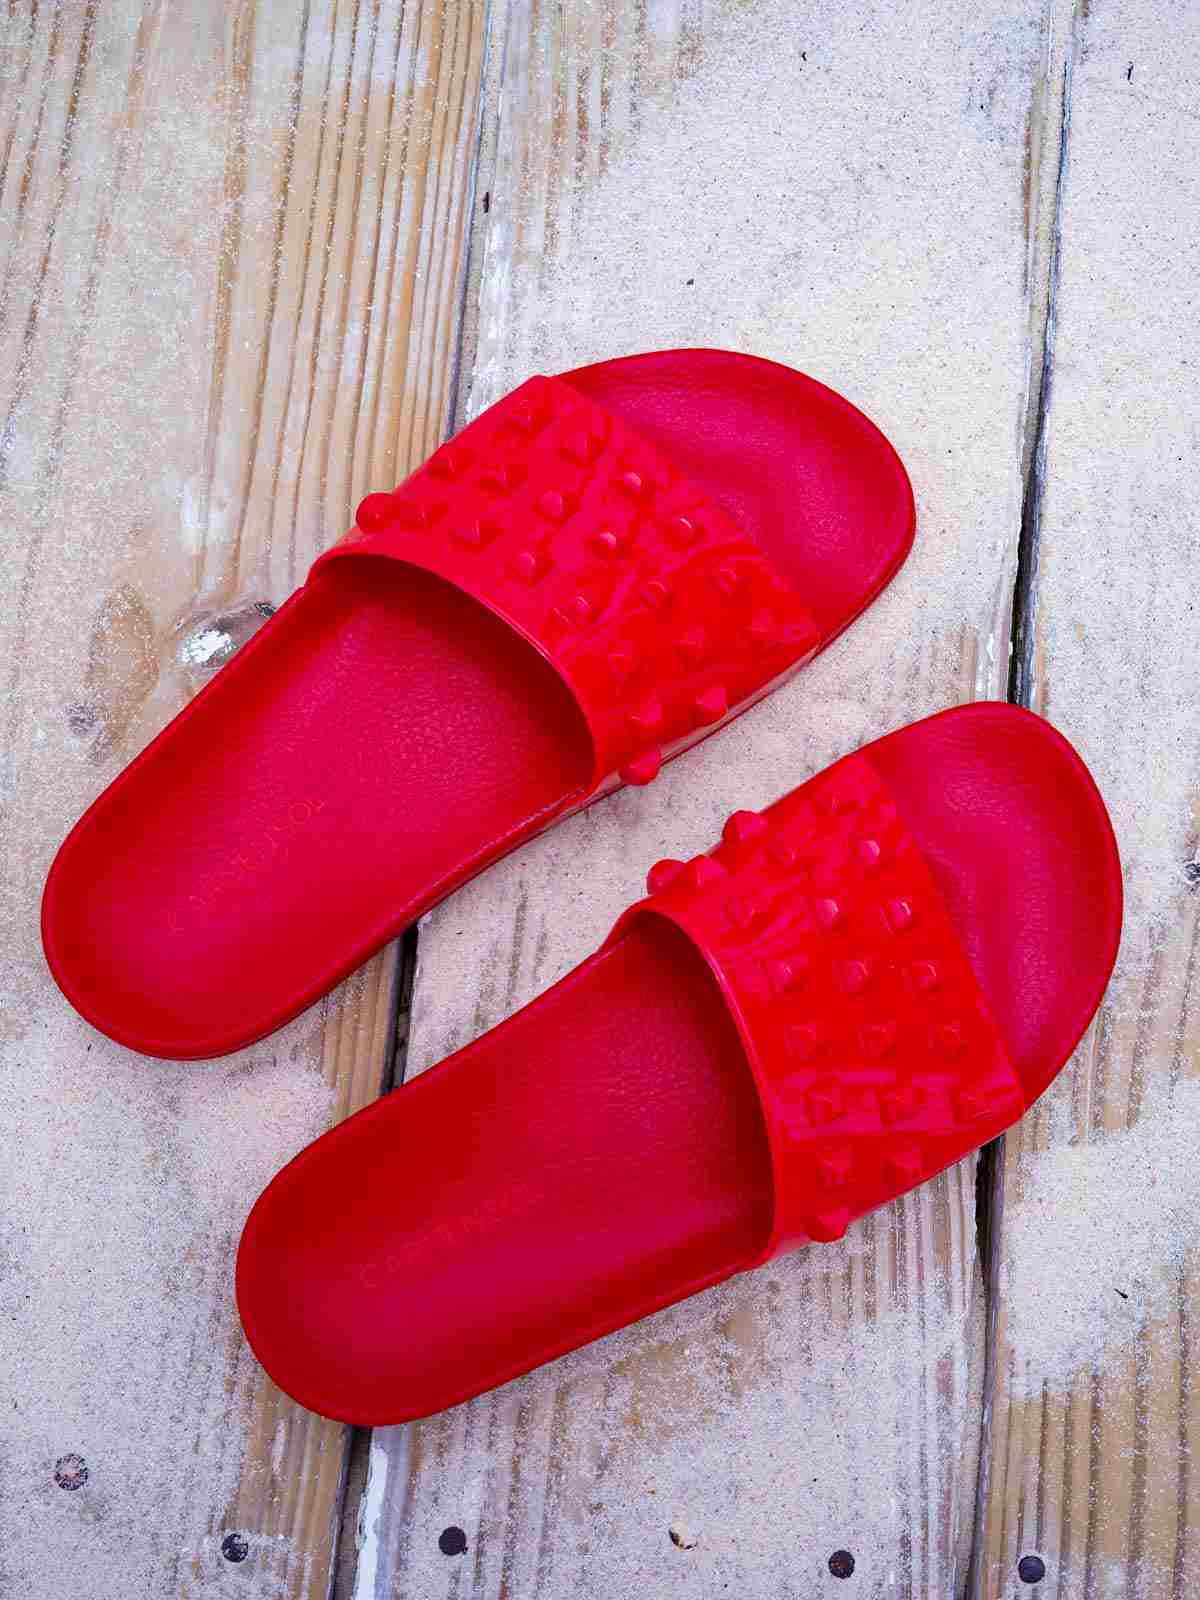 Buy Franco Red Jelly slides, Red Slides, summer flip-flop